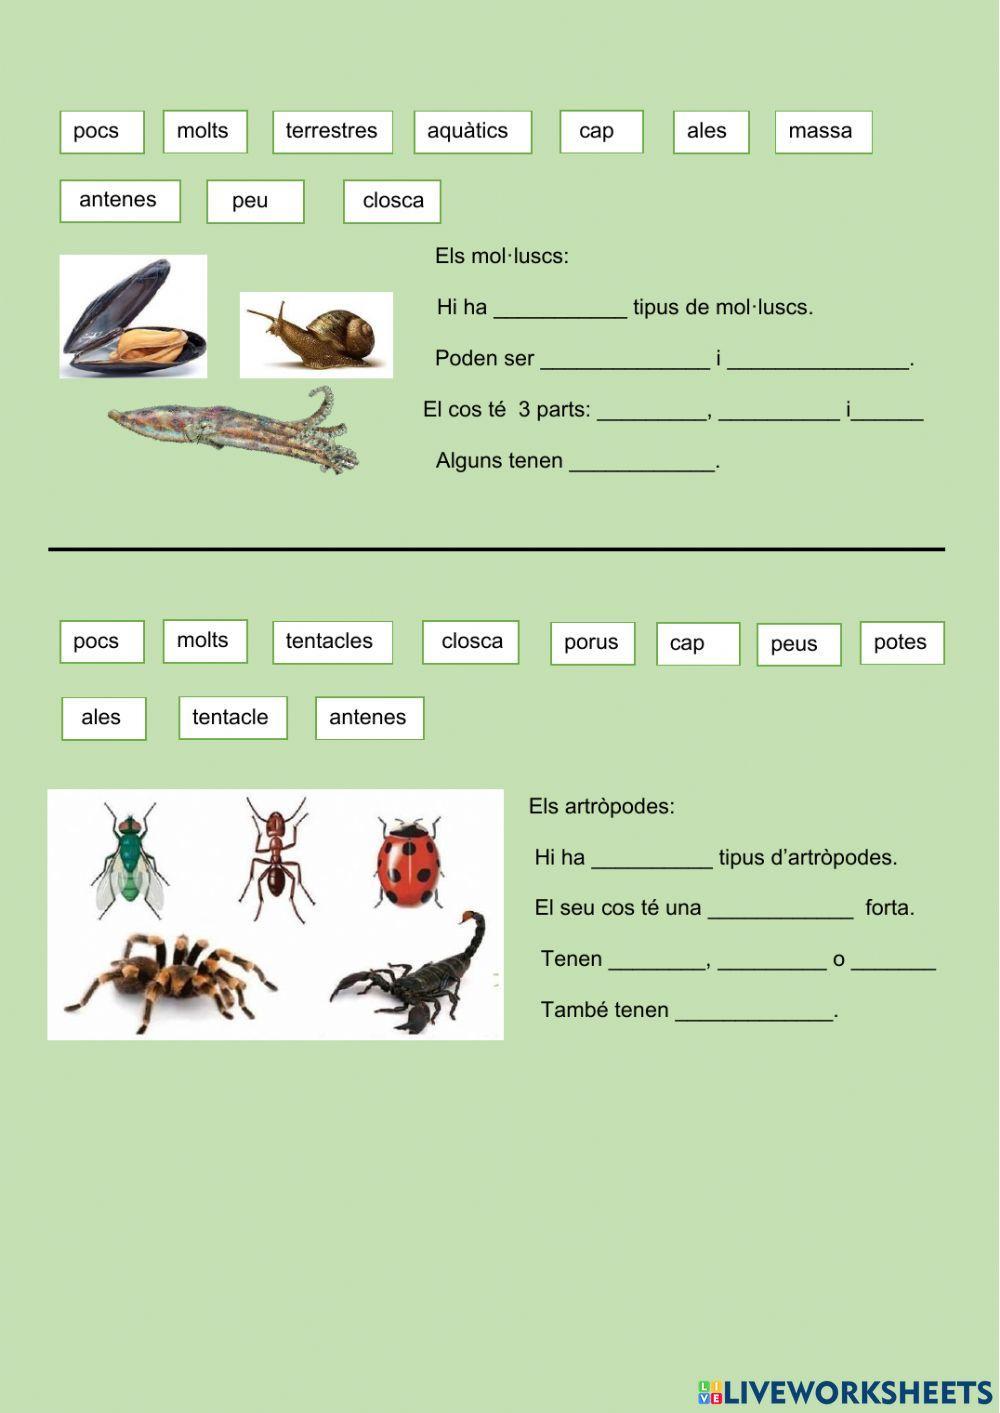 Característiques animals invertebrats